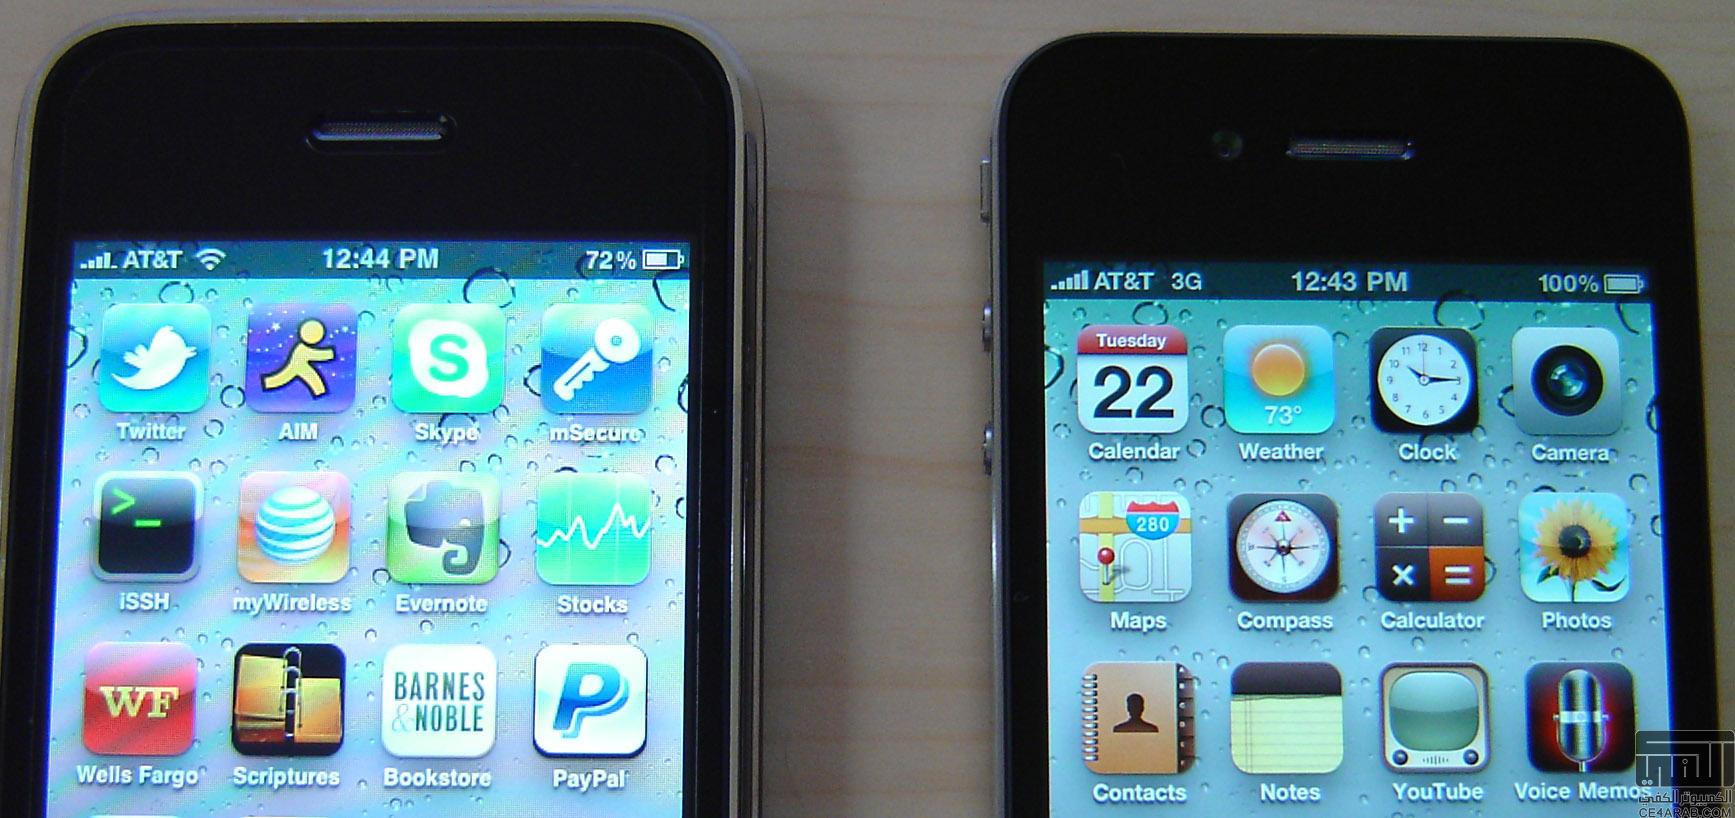 أنطباعات الأولية عن الهاتف المحمول iPhone 4 لحد الآن